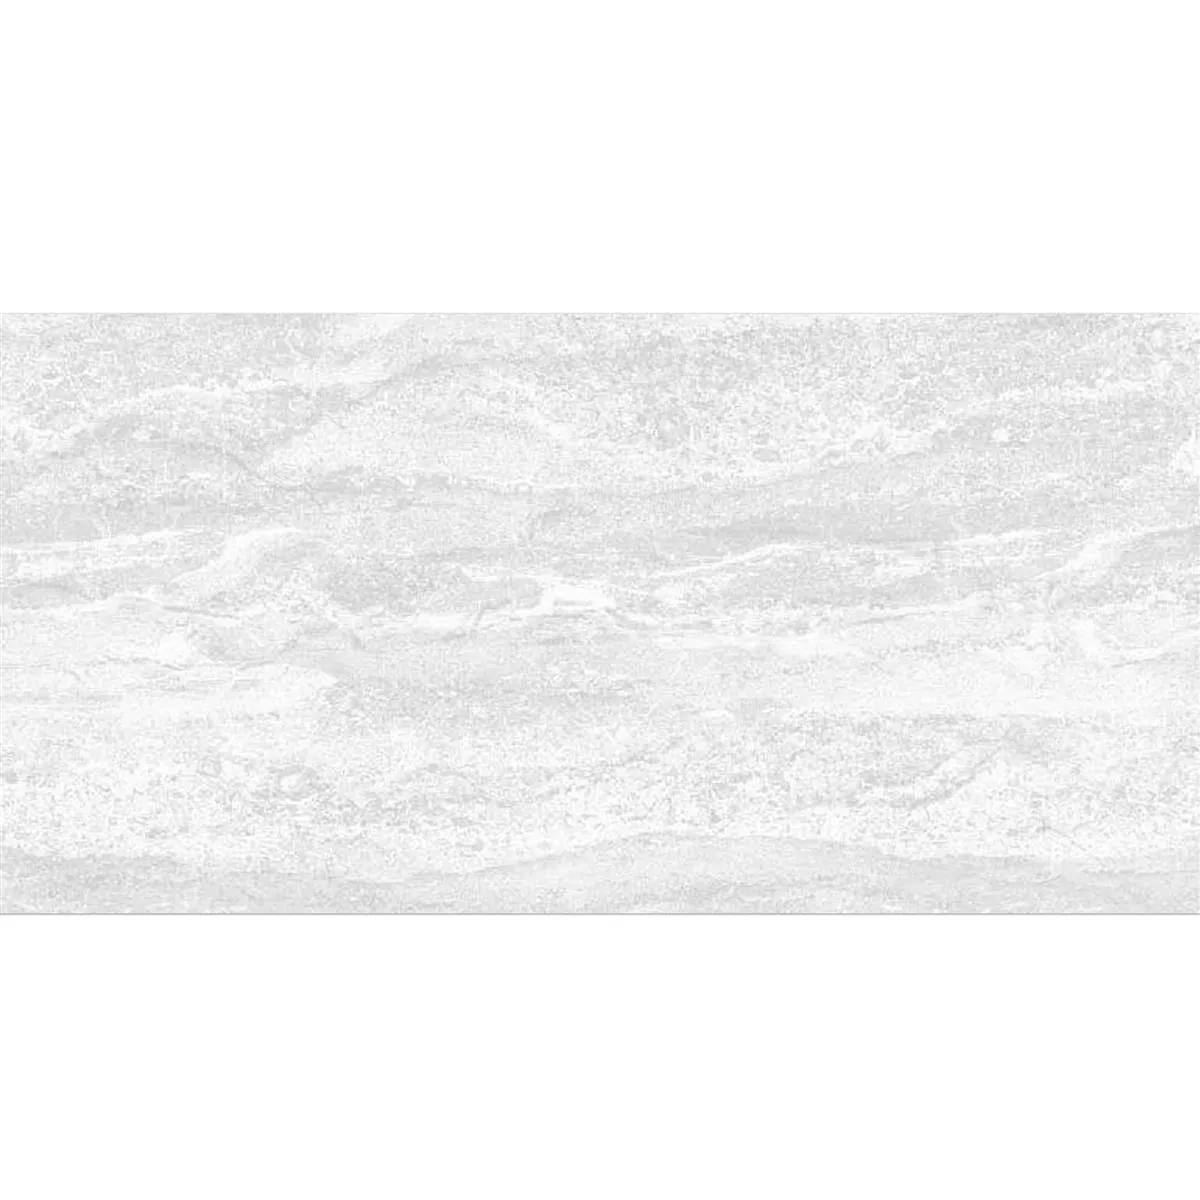 Échantillon Carrelage Mural Bellinzona Blanc Structuré 30x60cm